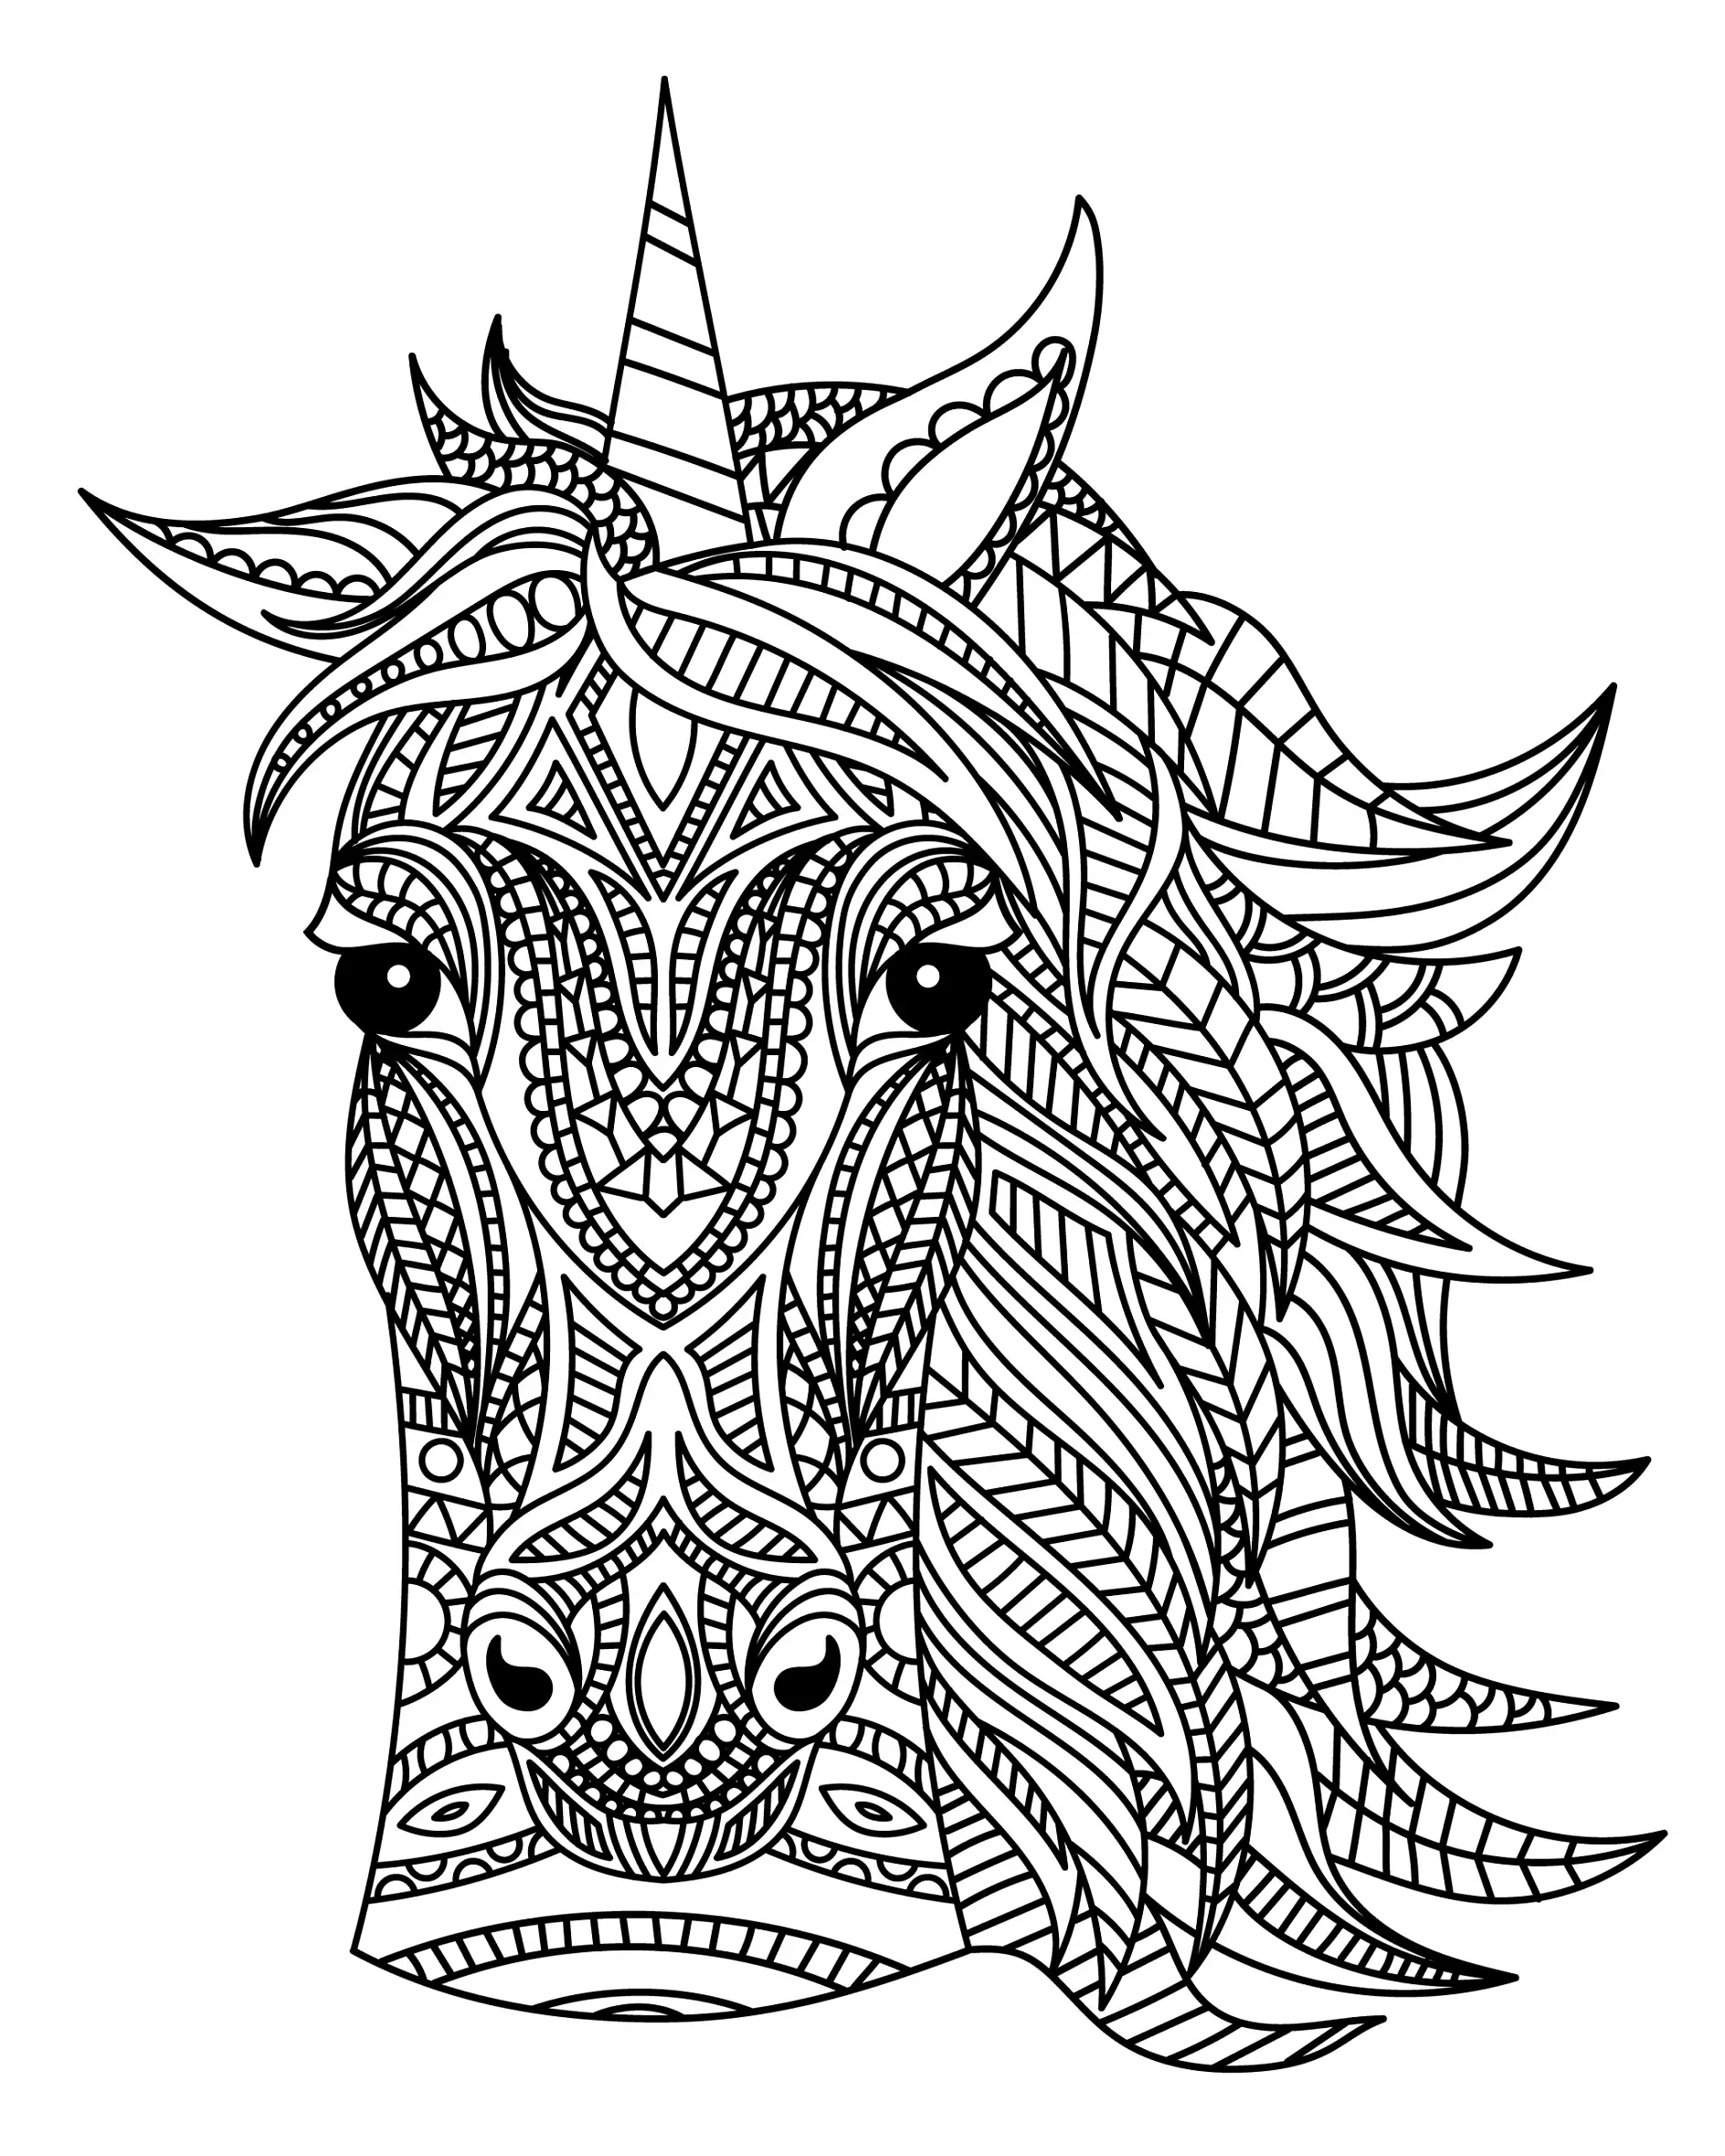 Ausmalbild Mandala Einhorn mit detaillierten Mustern